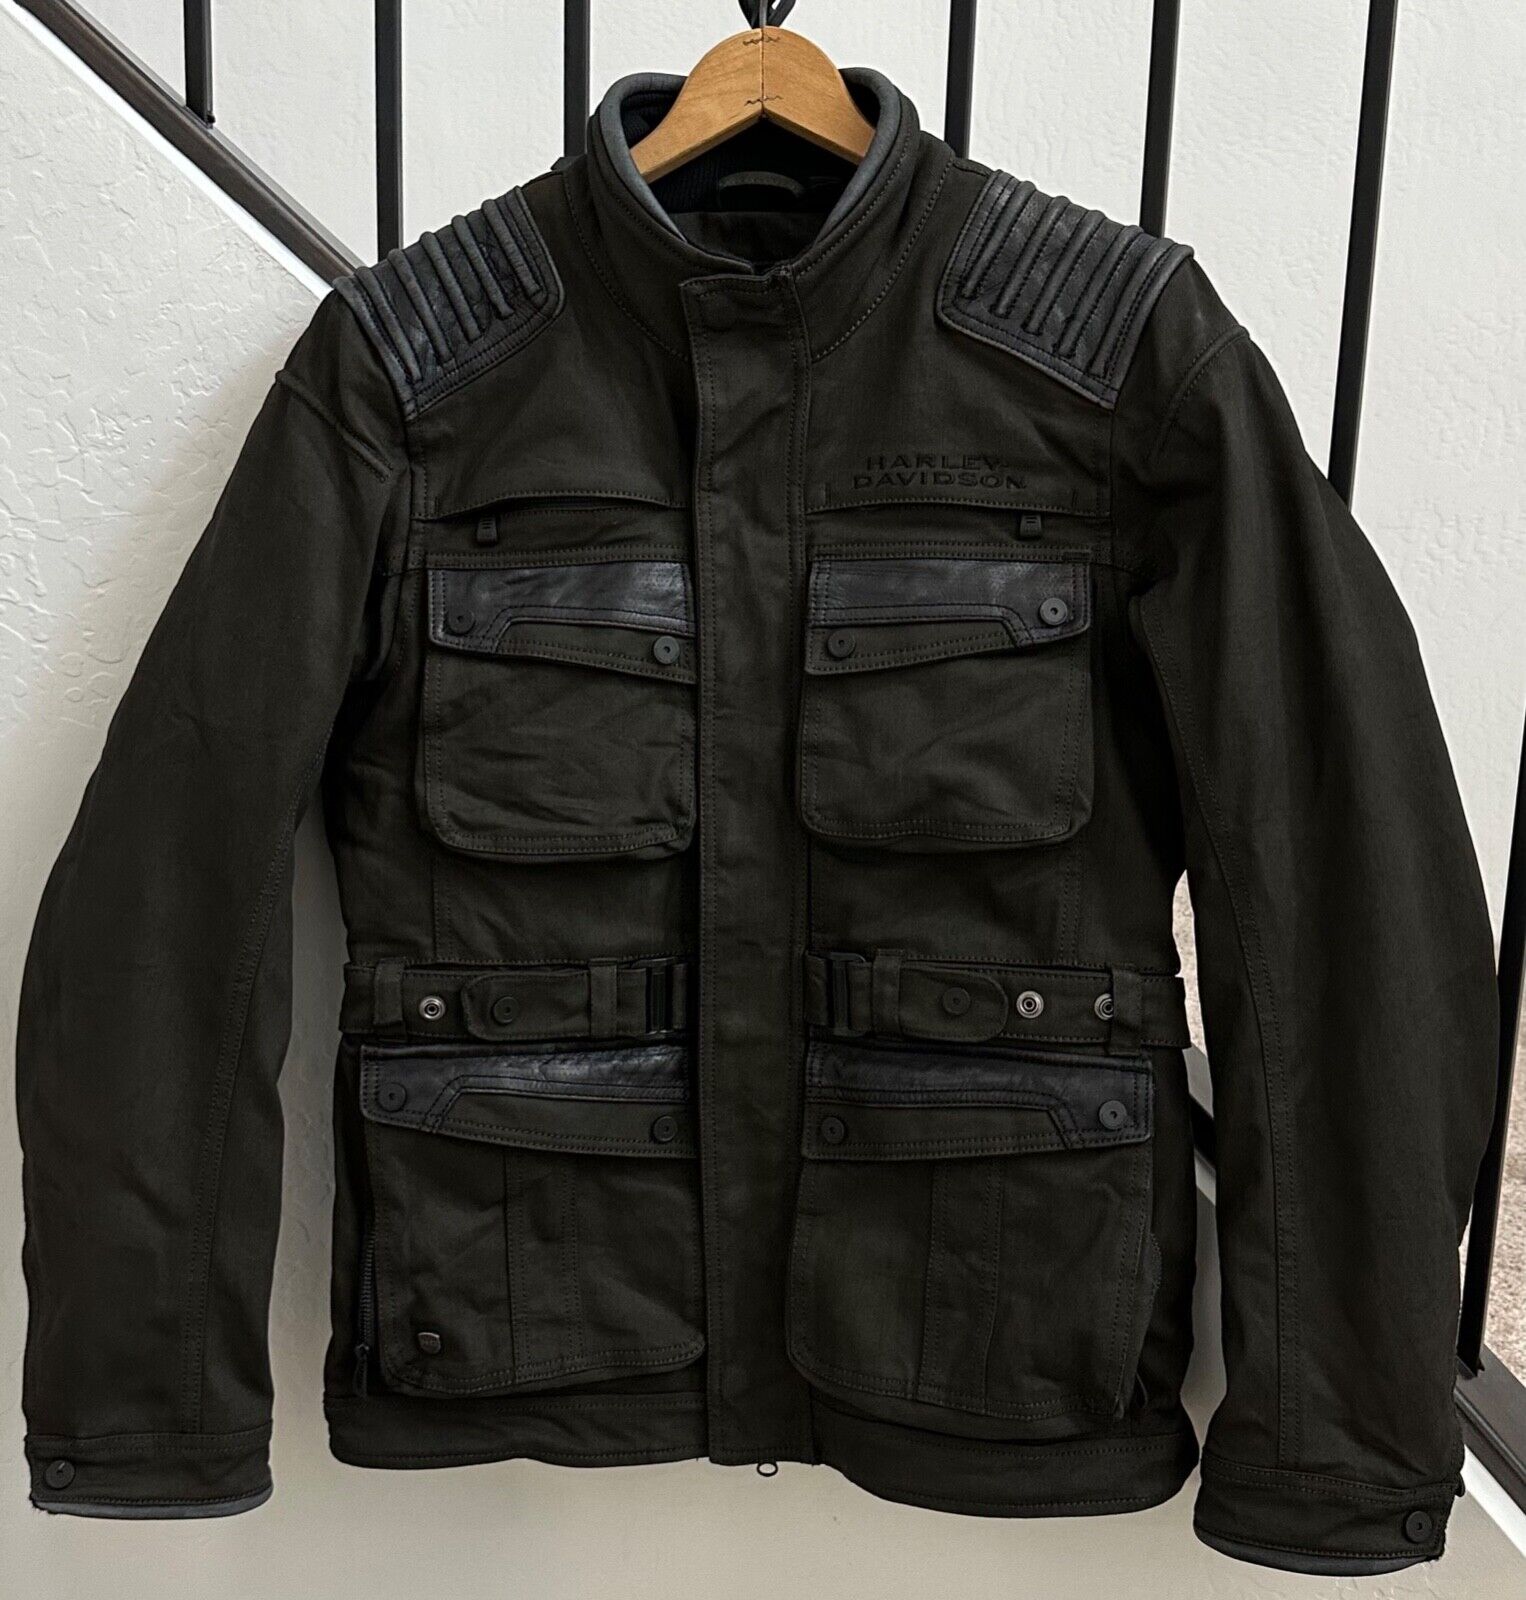 Harley Davidson Jacket Olive Green W Leather Trim Size M Medium Removable Liner